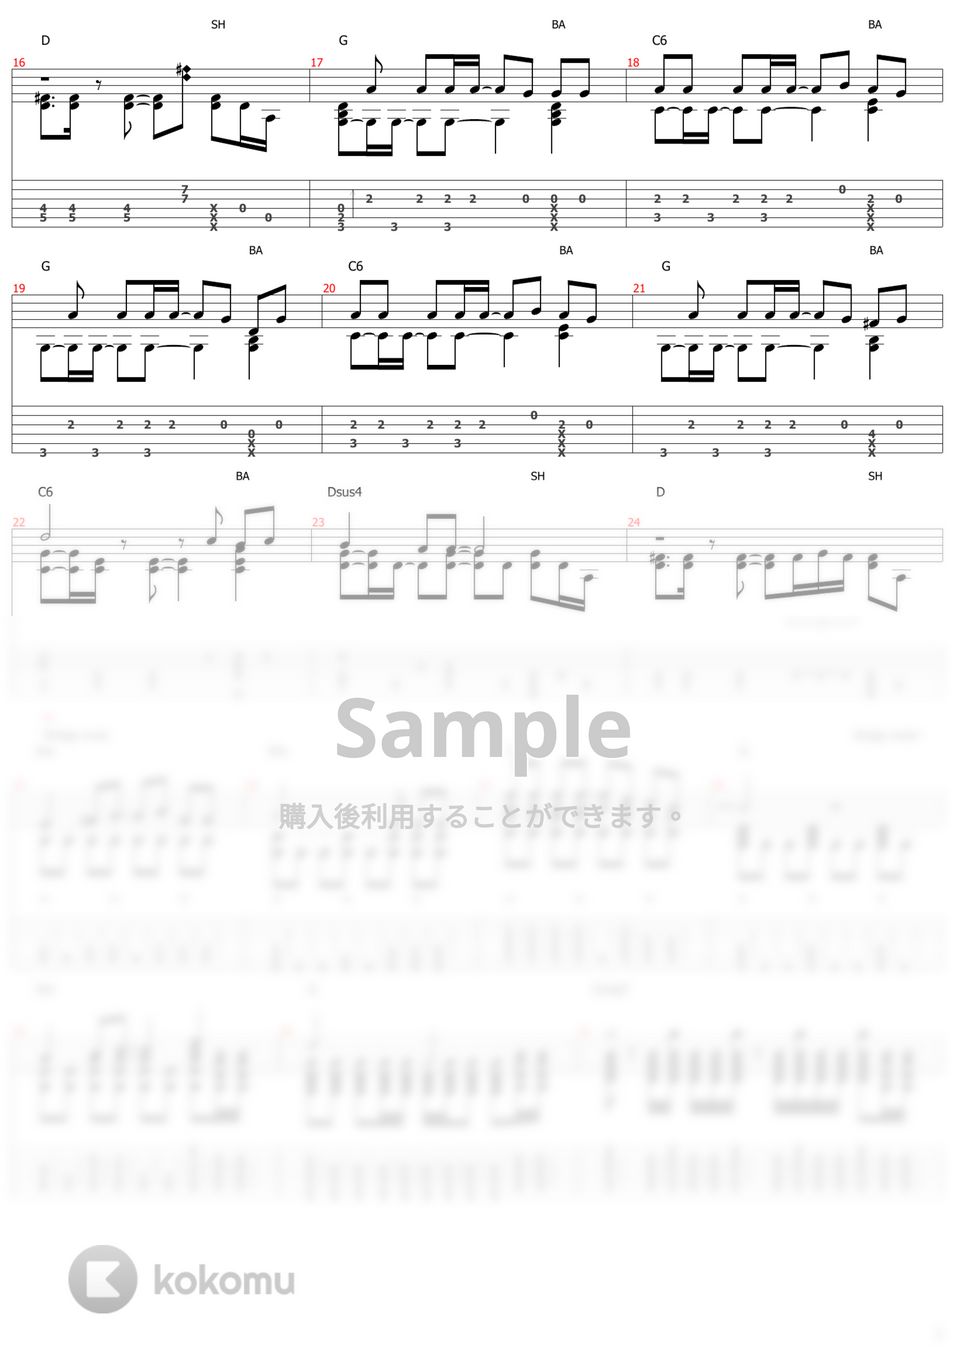 スピッツ - 春の歌 (ソロギター) by おさむらいさん